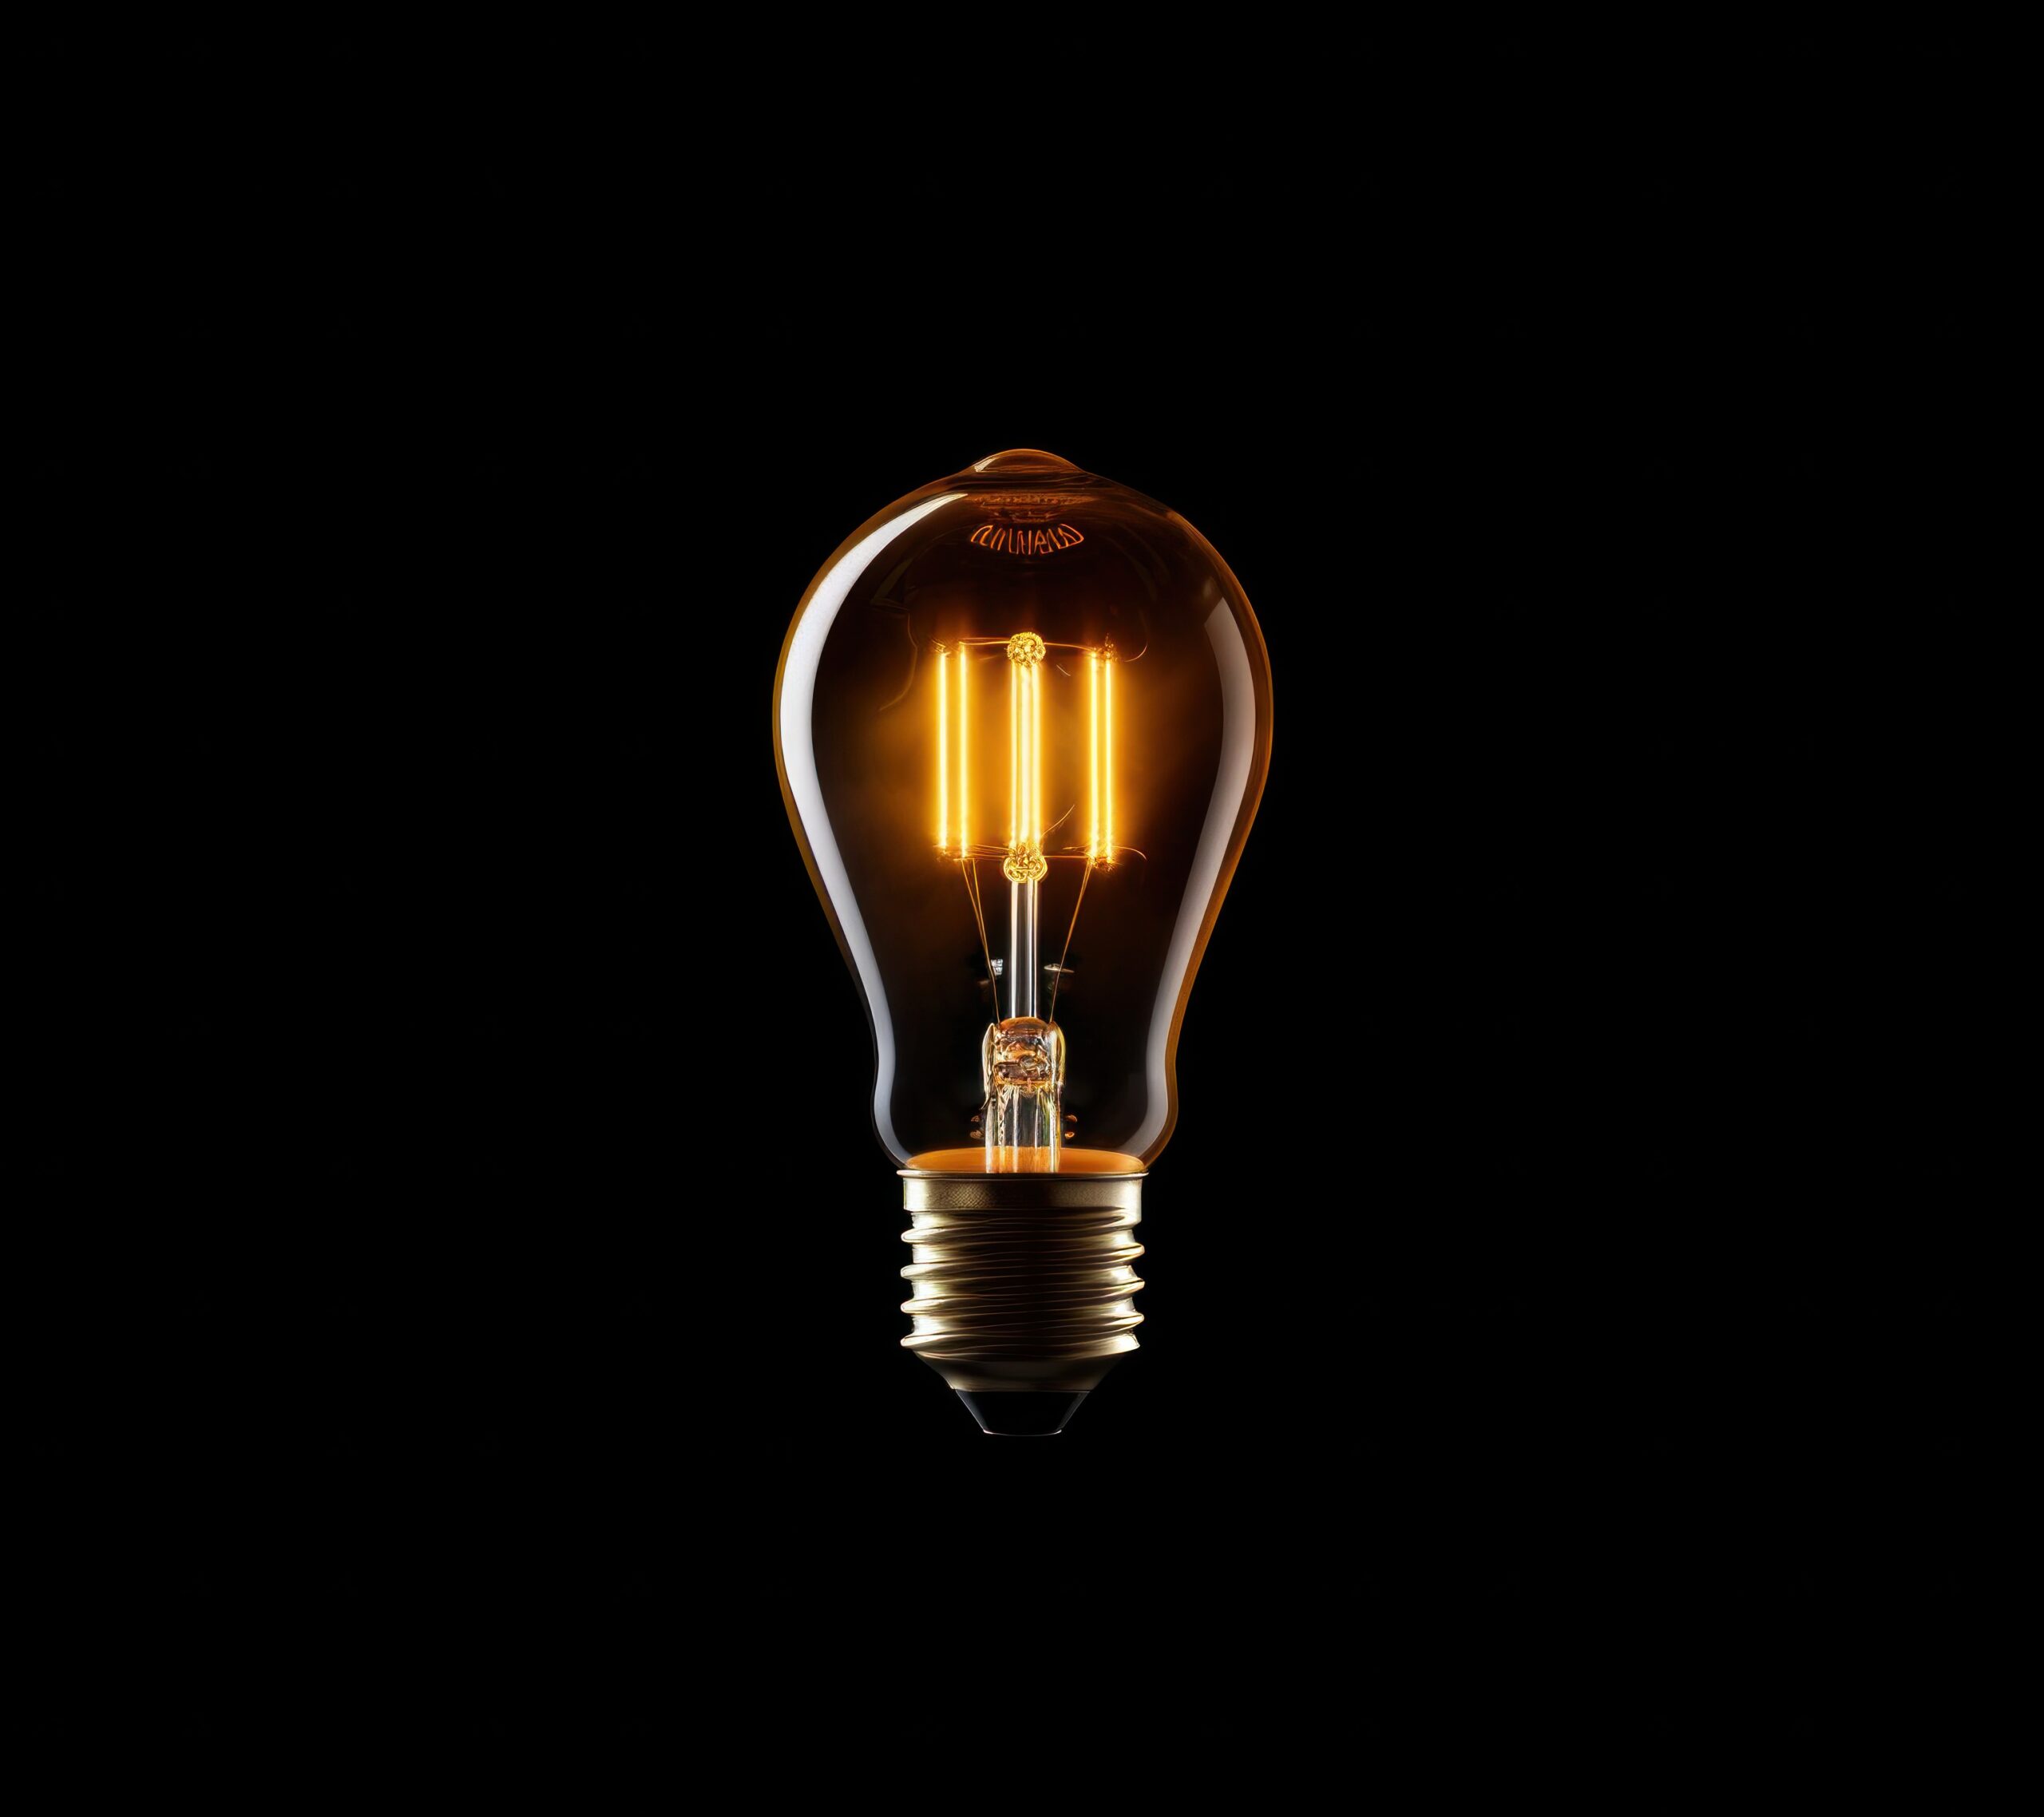 www.appr.com : How To Reset Smart Light Bulb?